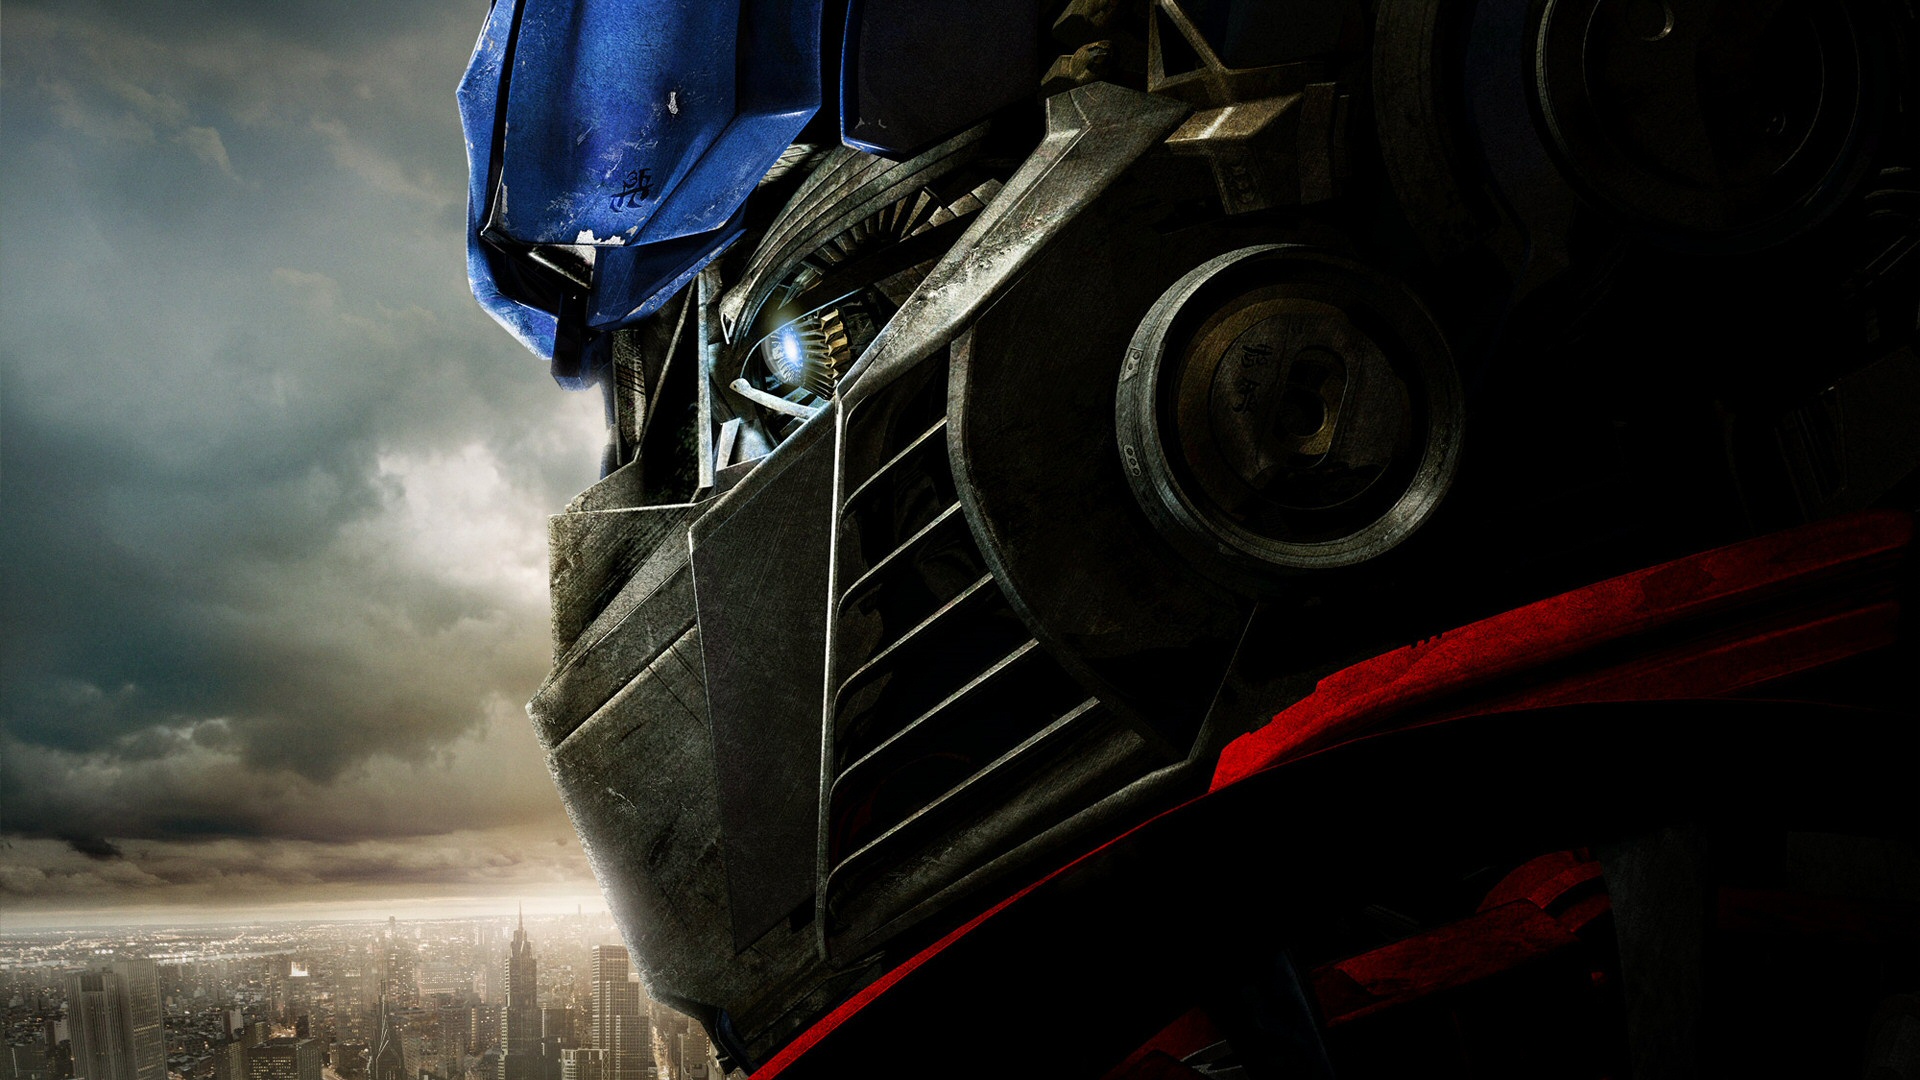 66+] Optimus Prime Hd Wallpaper - WallpaperSafari